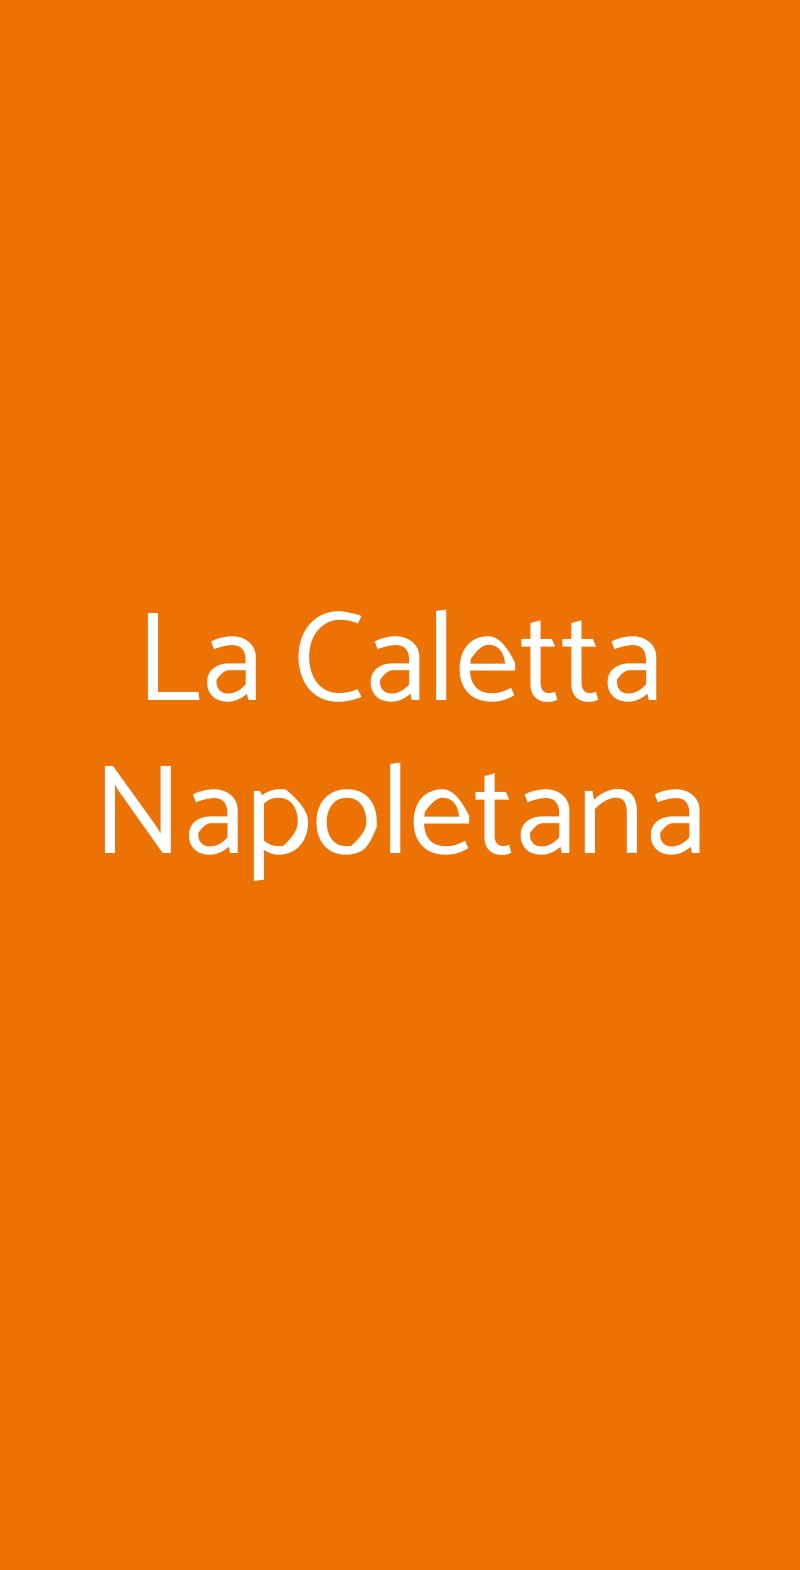 La Caletta Napoletana Roma menù 1 pagina